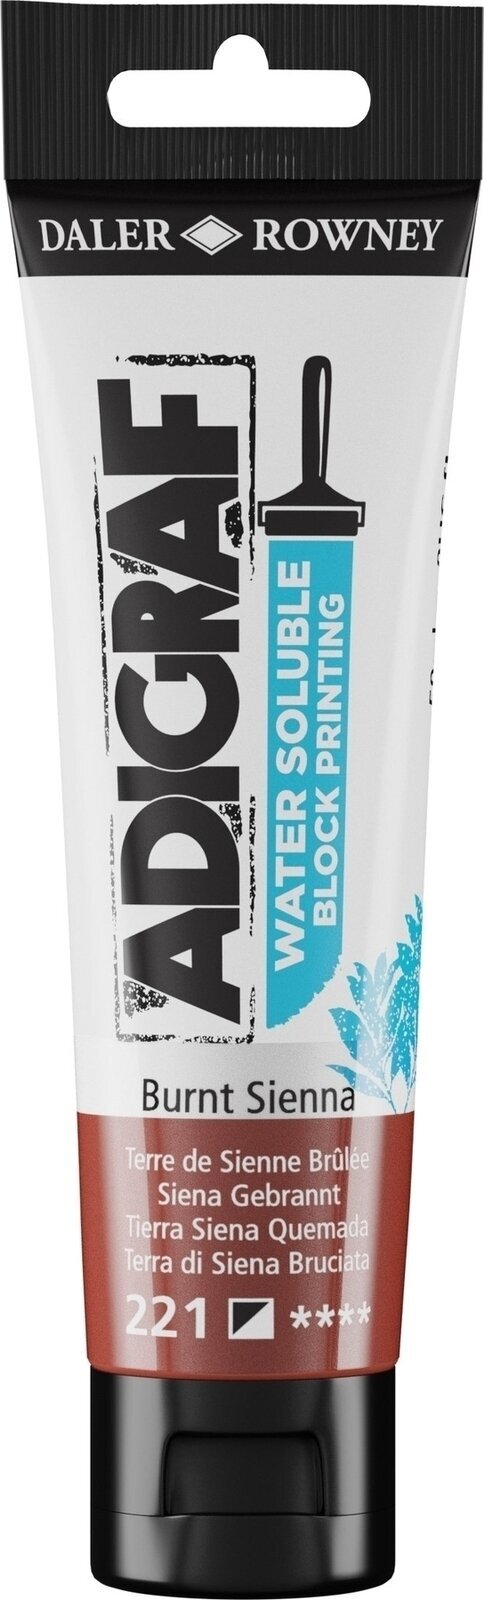 Χρώμα για λινογραφία Daler Rowney Adigraf Block Printing Water Soluble Colour Χρώμα για λινογραφία Burnt Sienna 59 ml